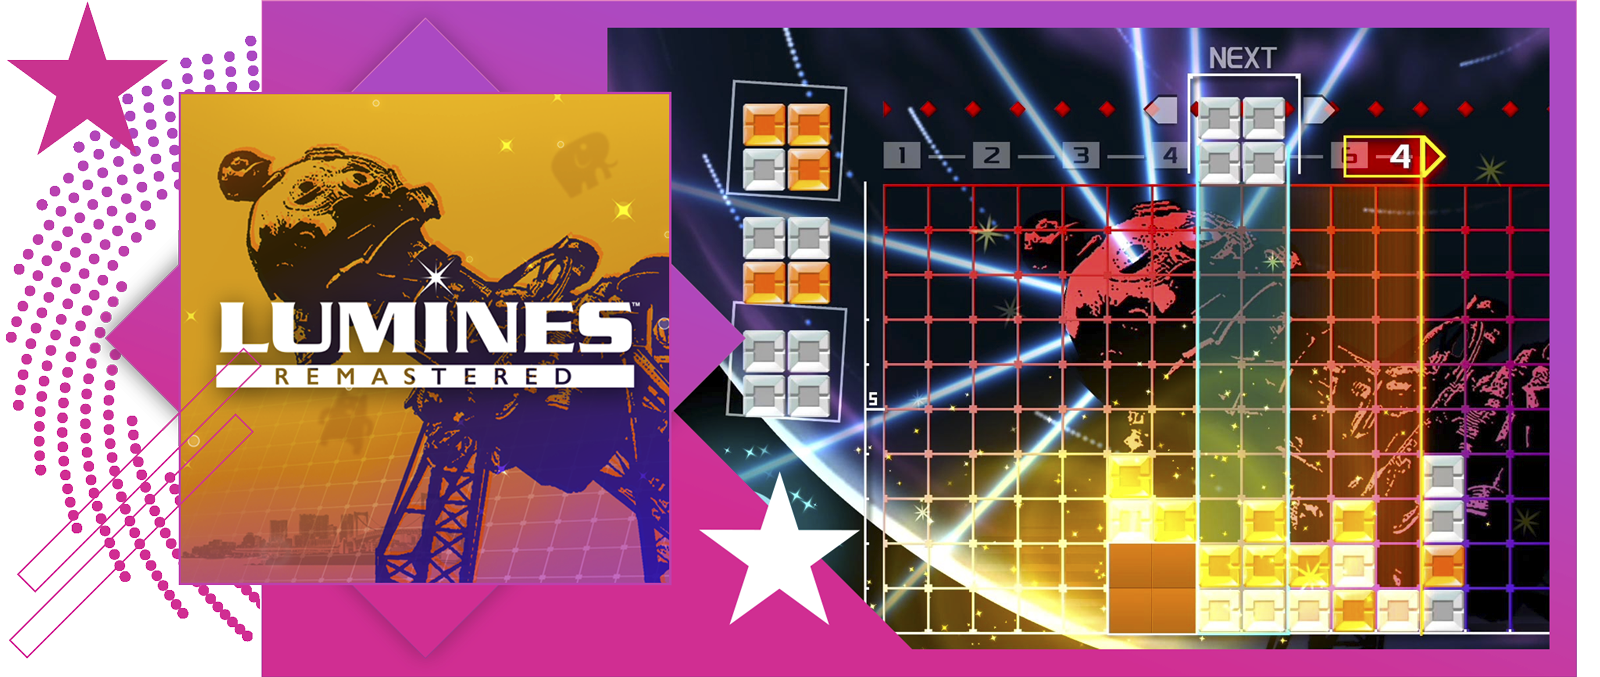 Najlepšie rytmické hry – obrázok s kľúčovou grafikou a ukážkou z hry Lumines Remastered.